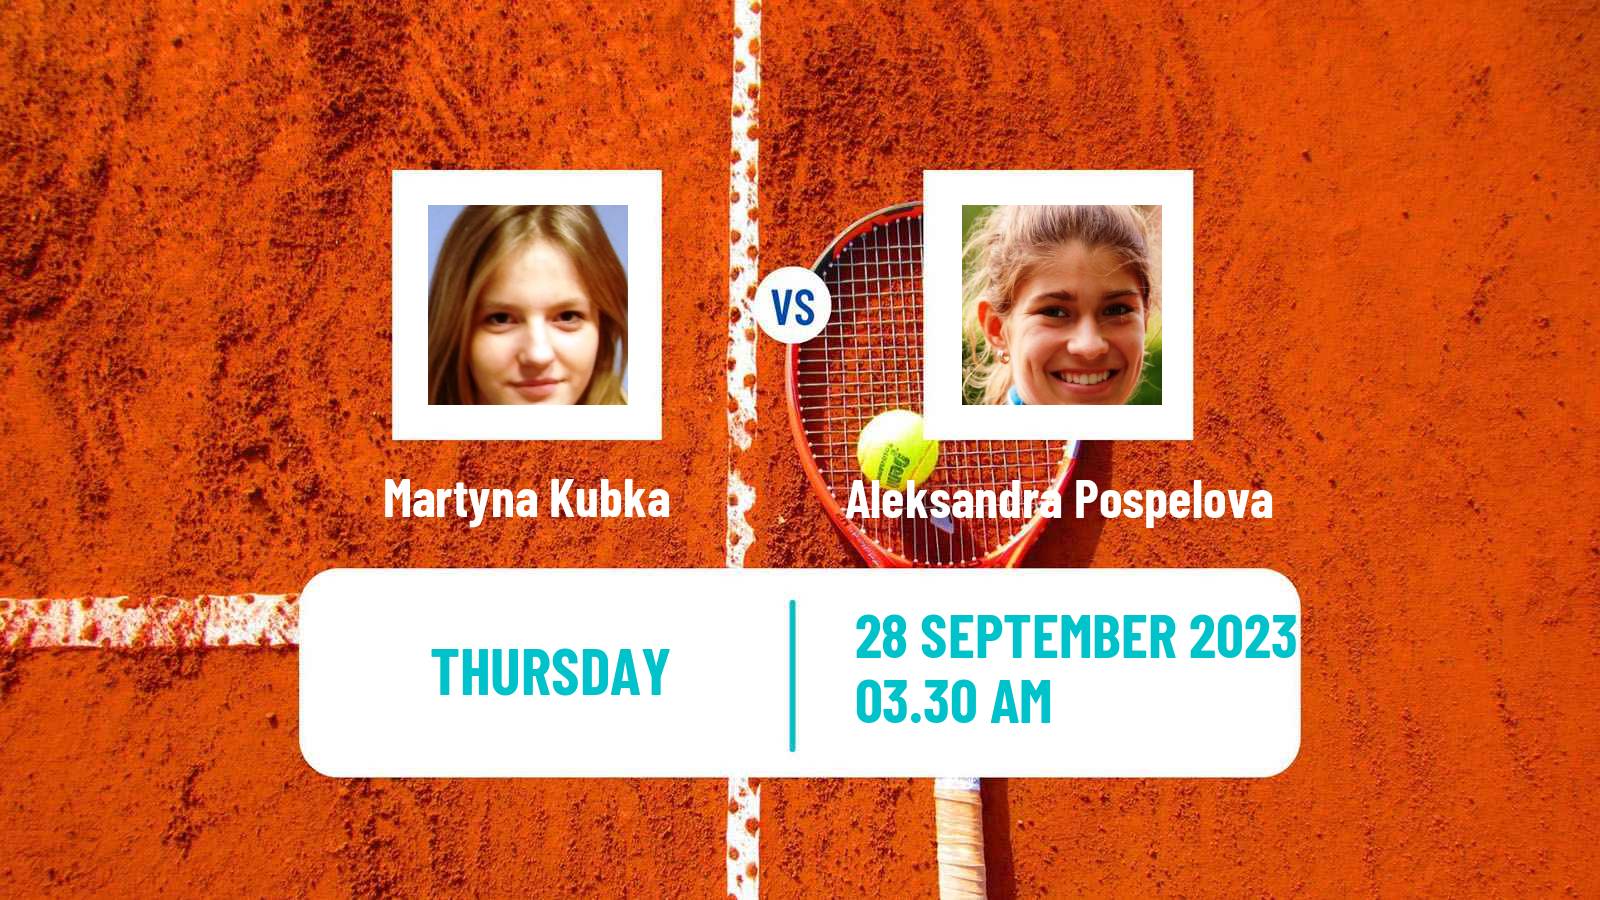 Tennis ITF W15 Sharm Elsheikh 12 Women Martyna Kubka - Aleksandra Pospelova